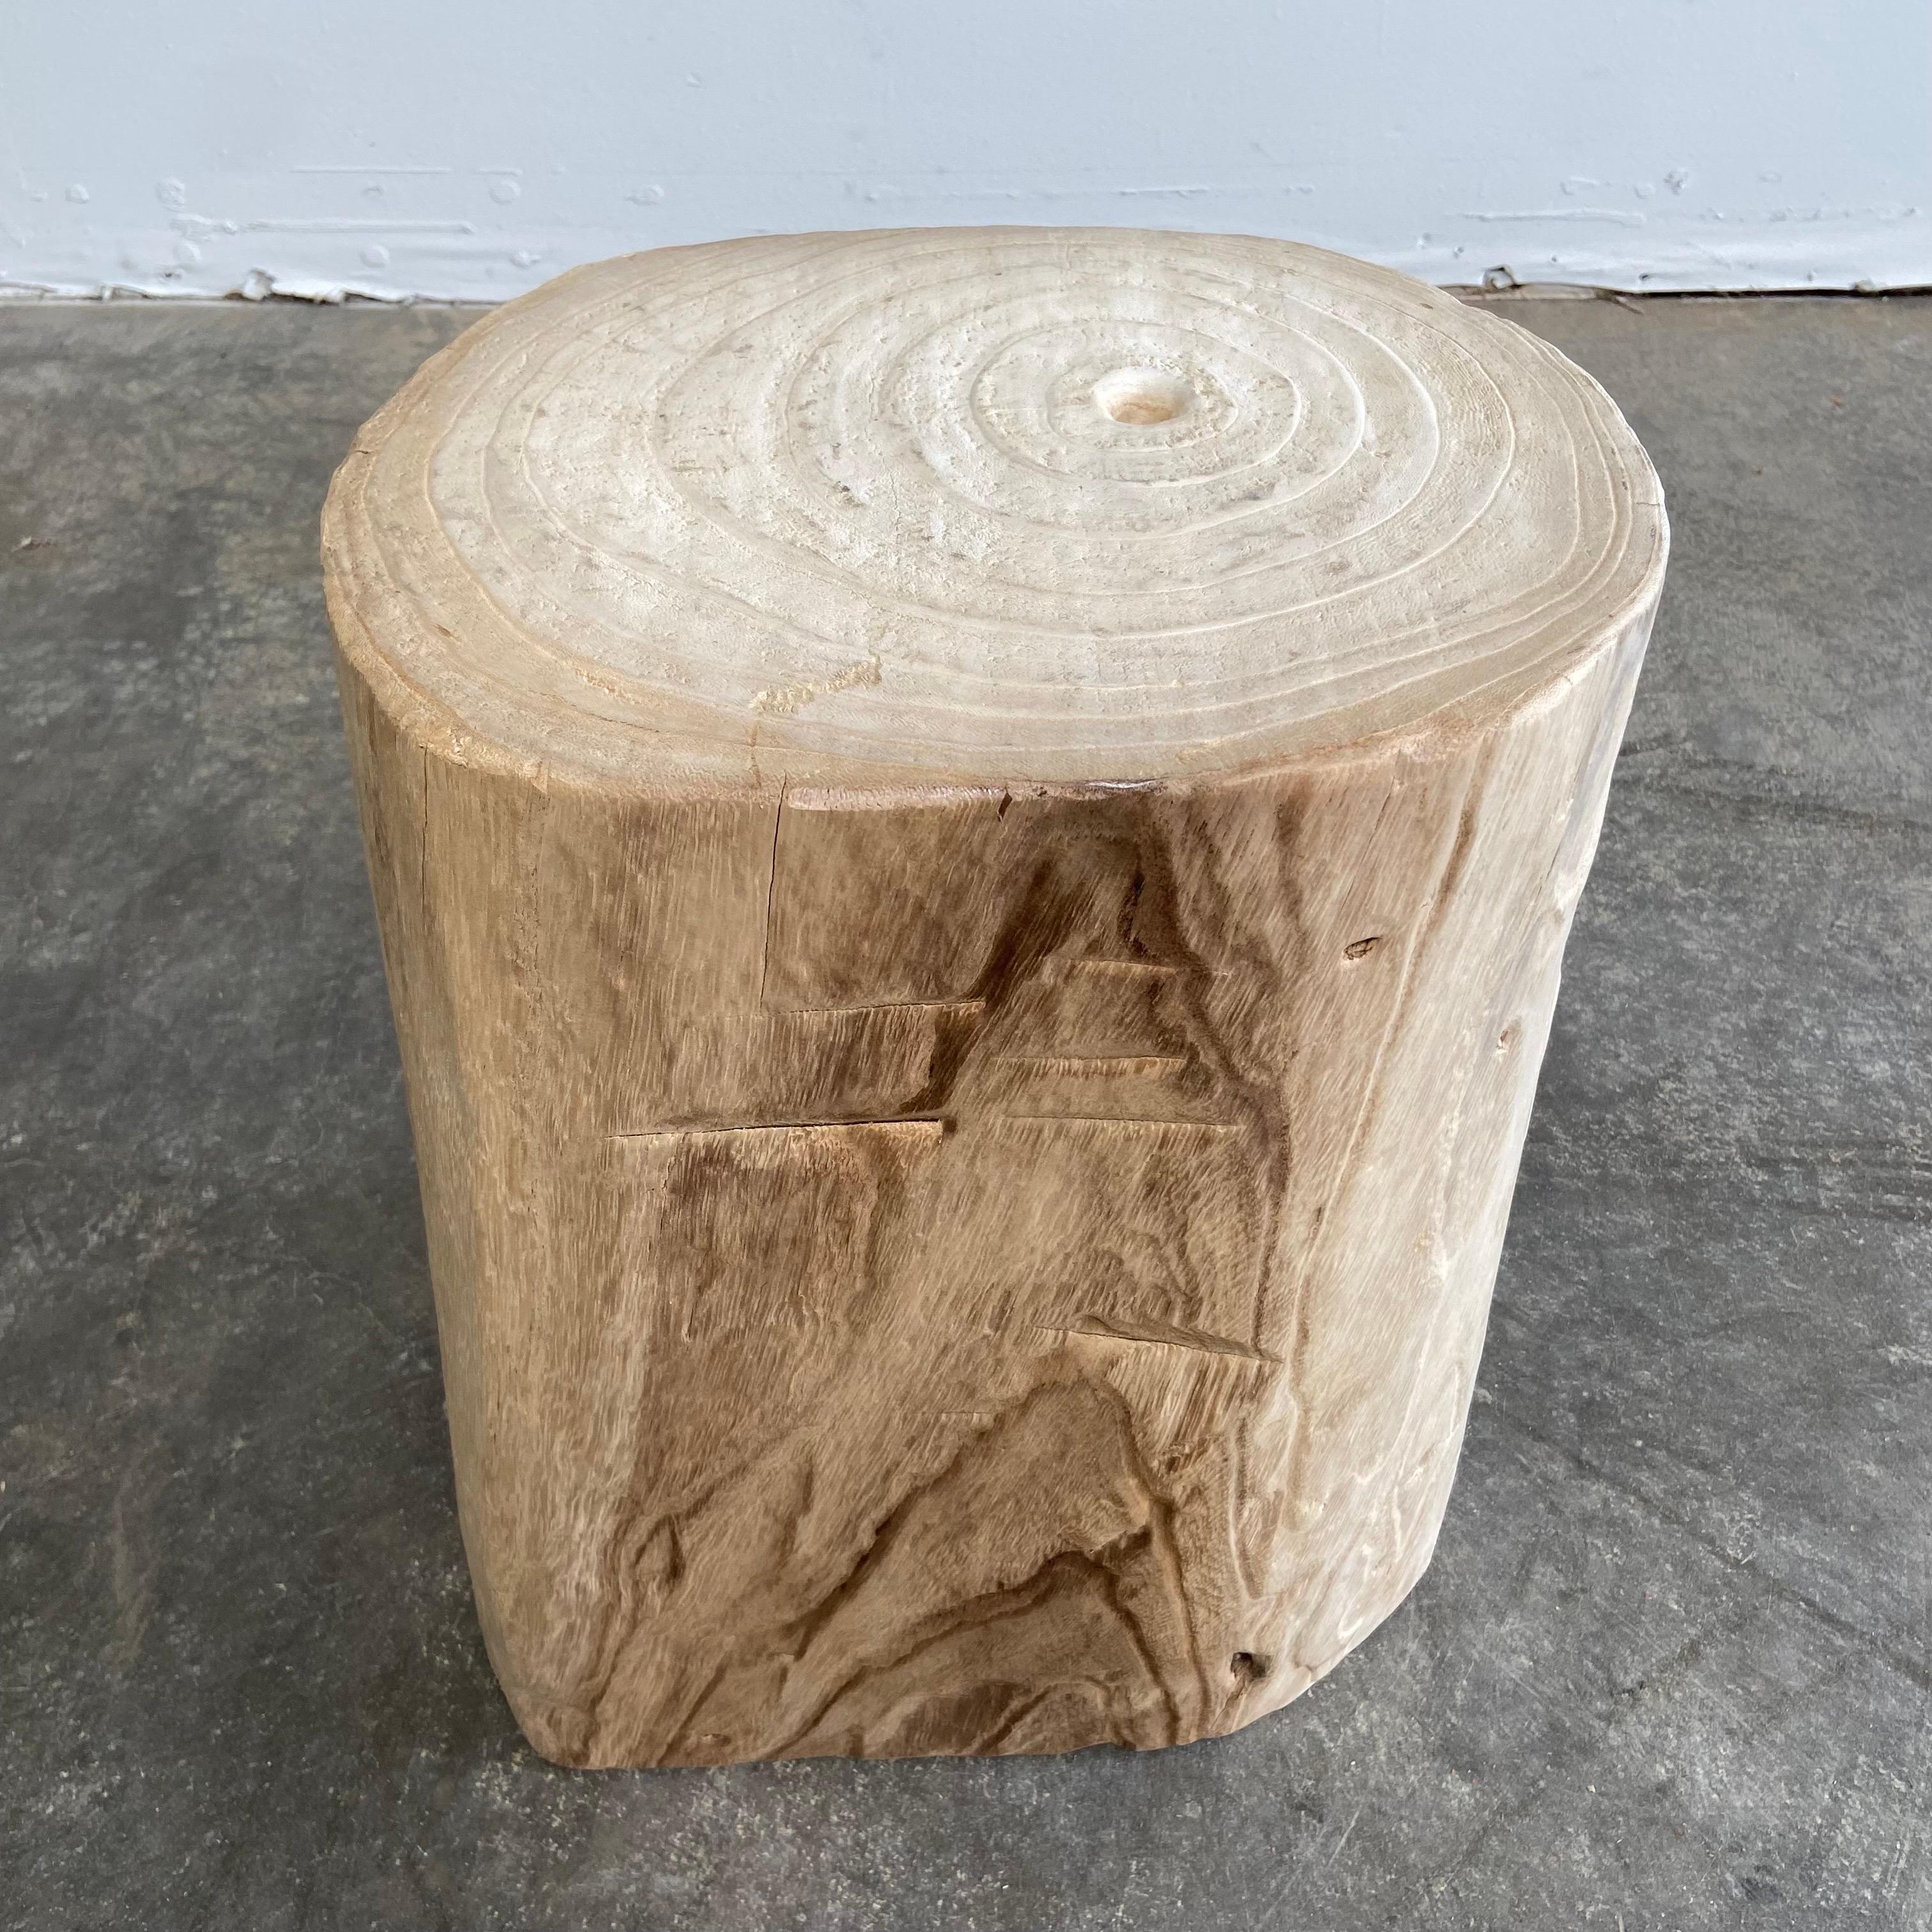 wood stump side table